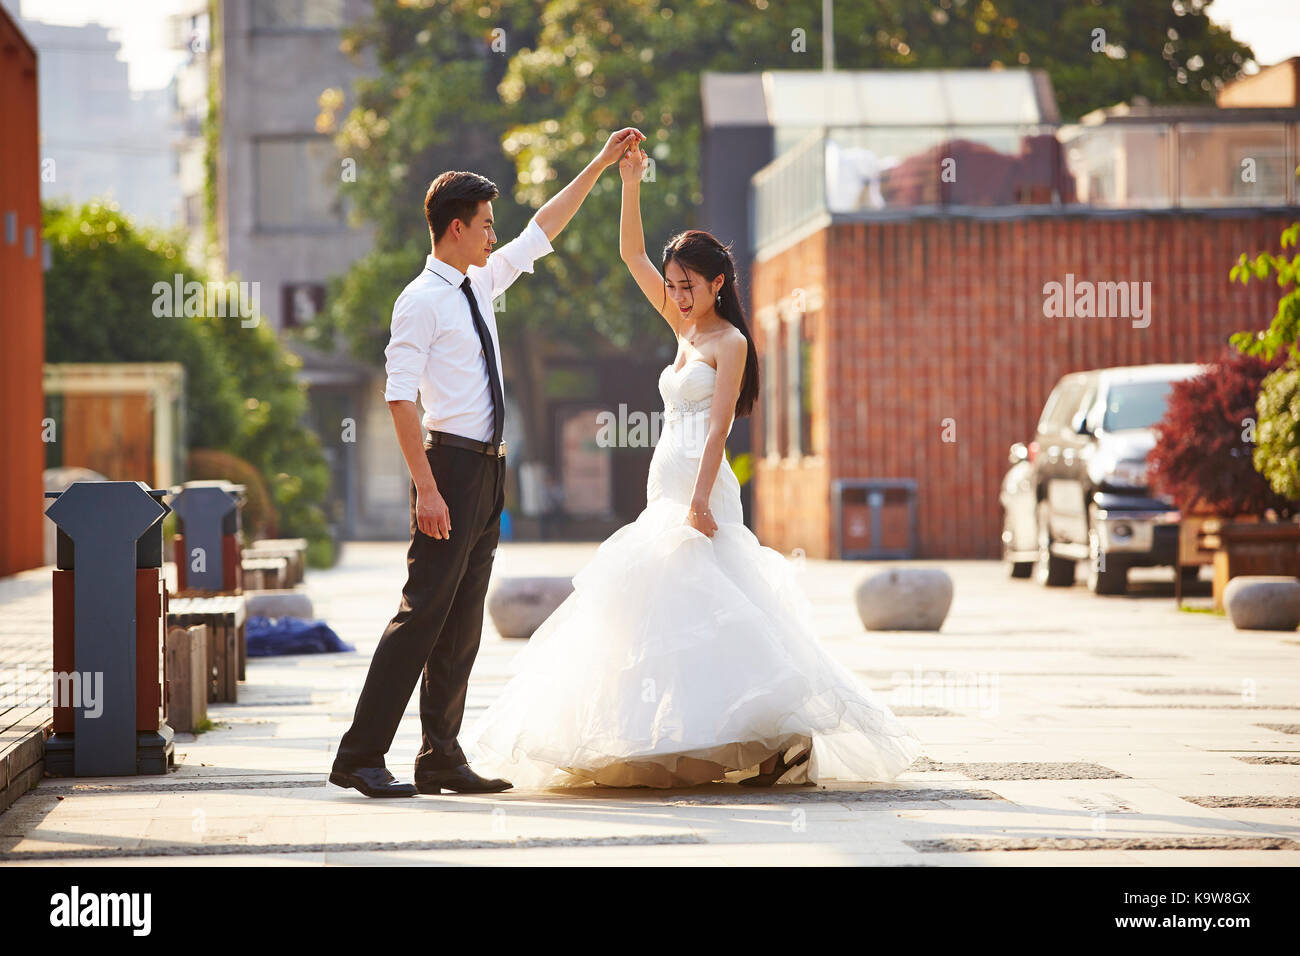 Junge asiatische Braut und Bräutigam in Wedding Dress tanzen auf dem Parkplatz. Stockfoto